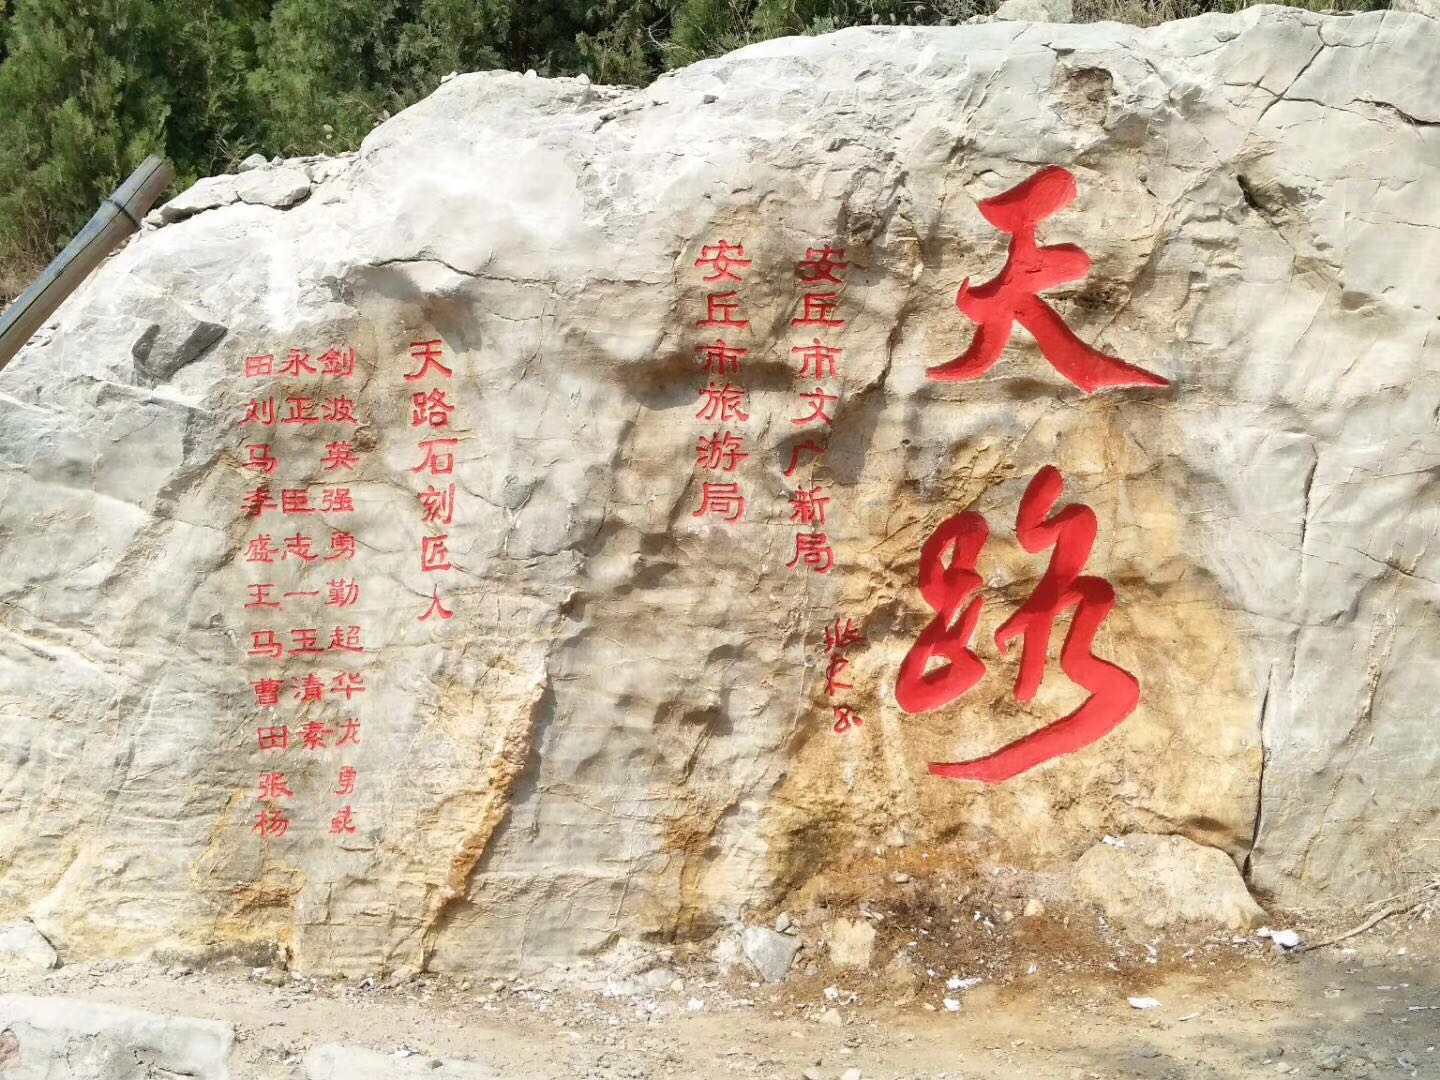 11位非遗传承人为安丘“天路”增添文化异彩 计划雕刻岩壁石刻60余块